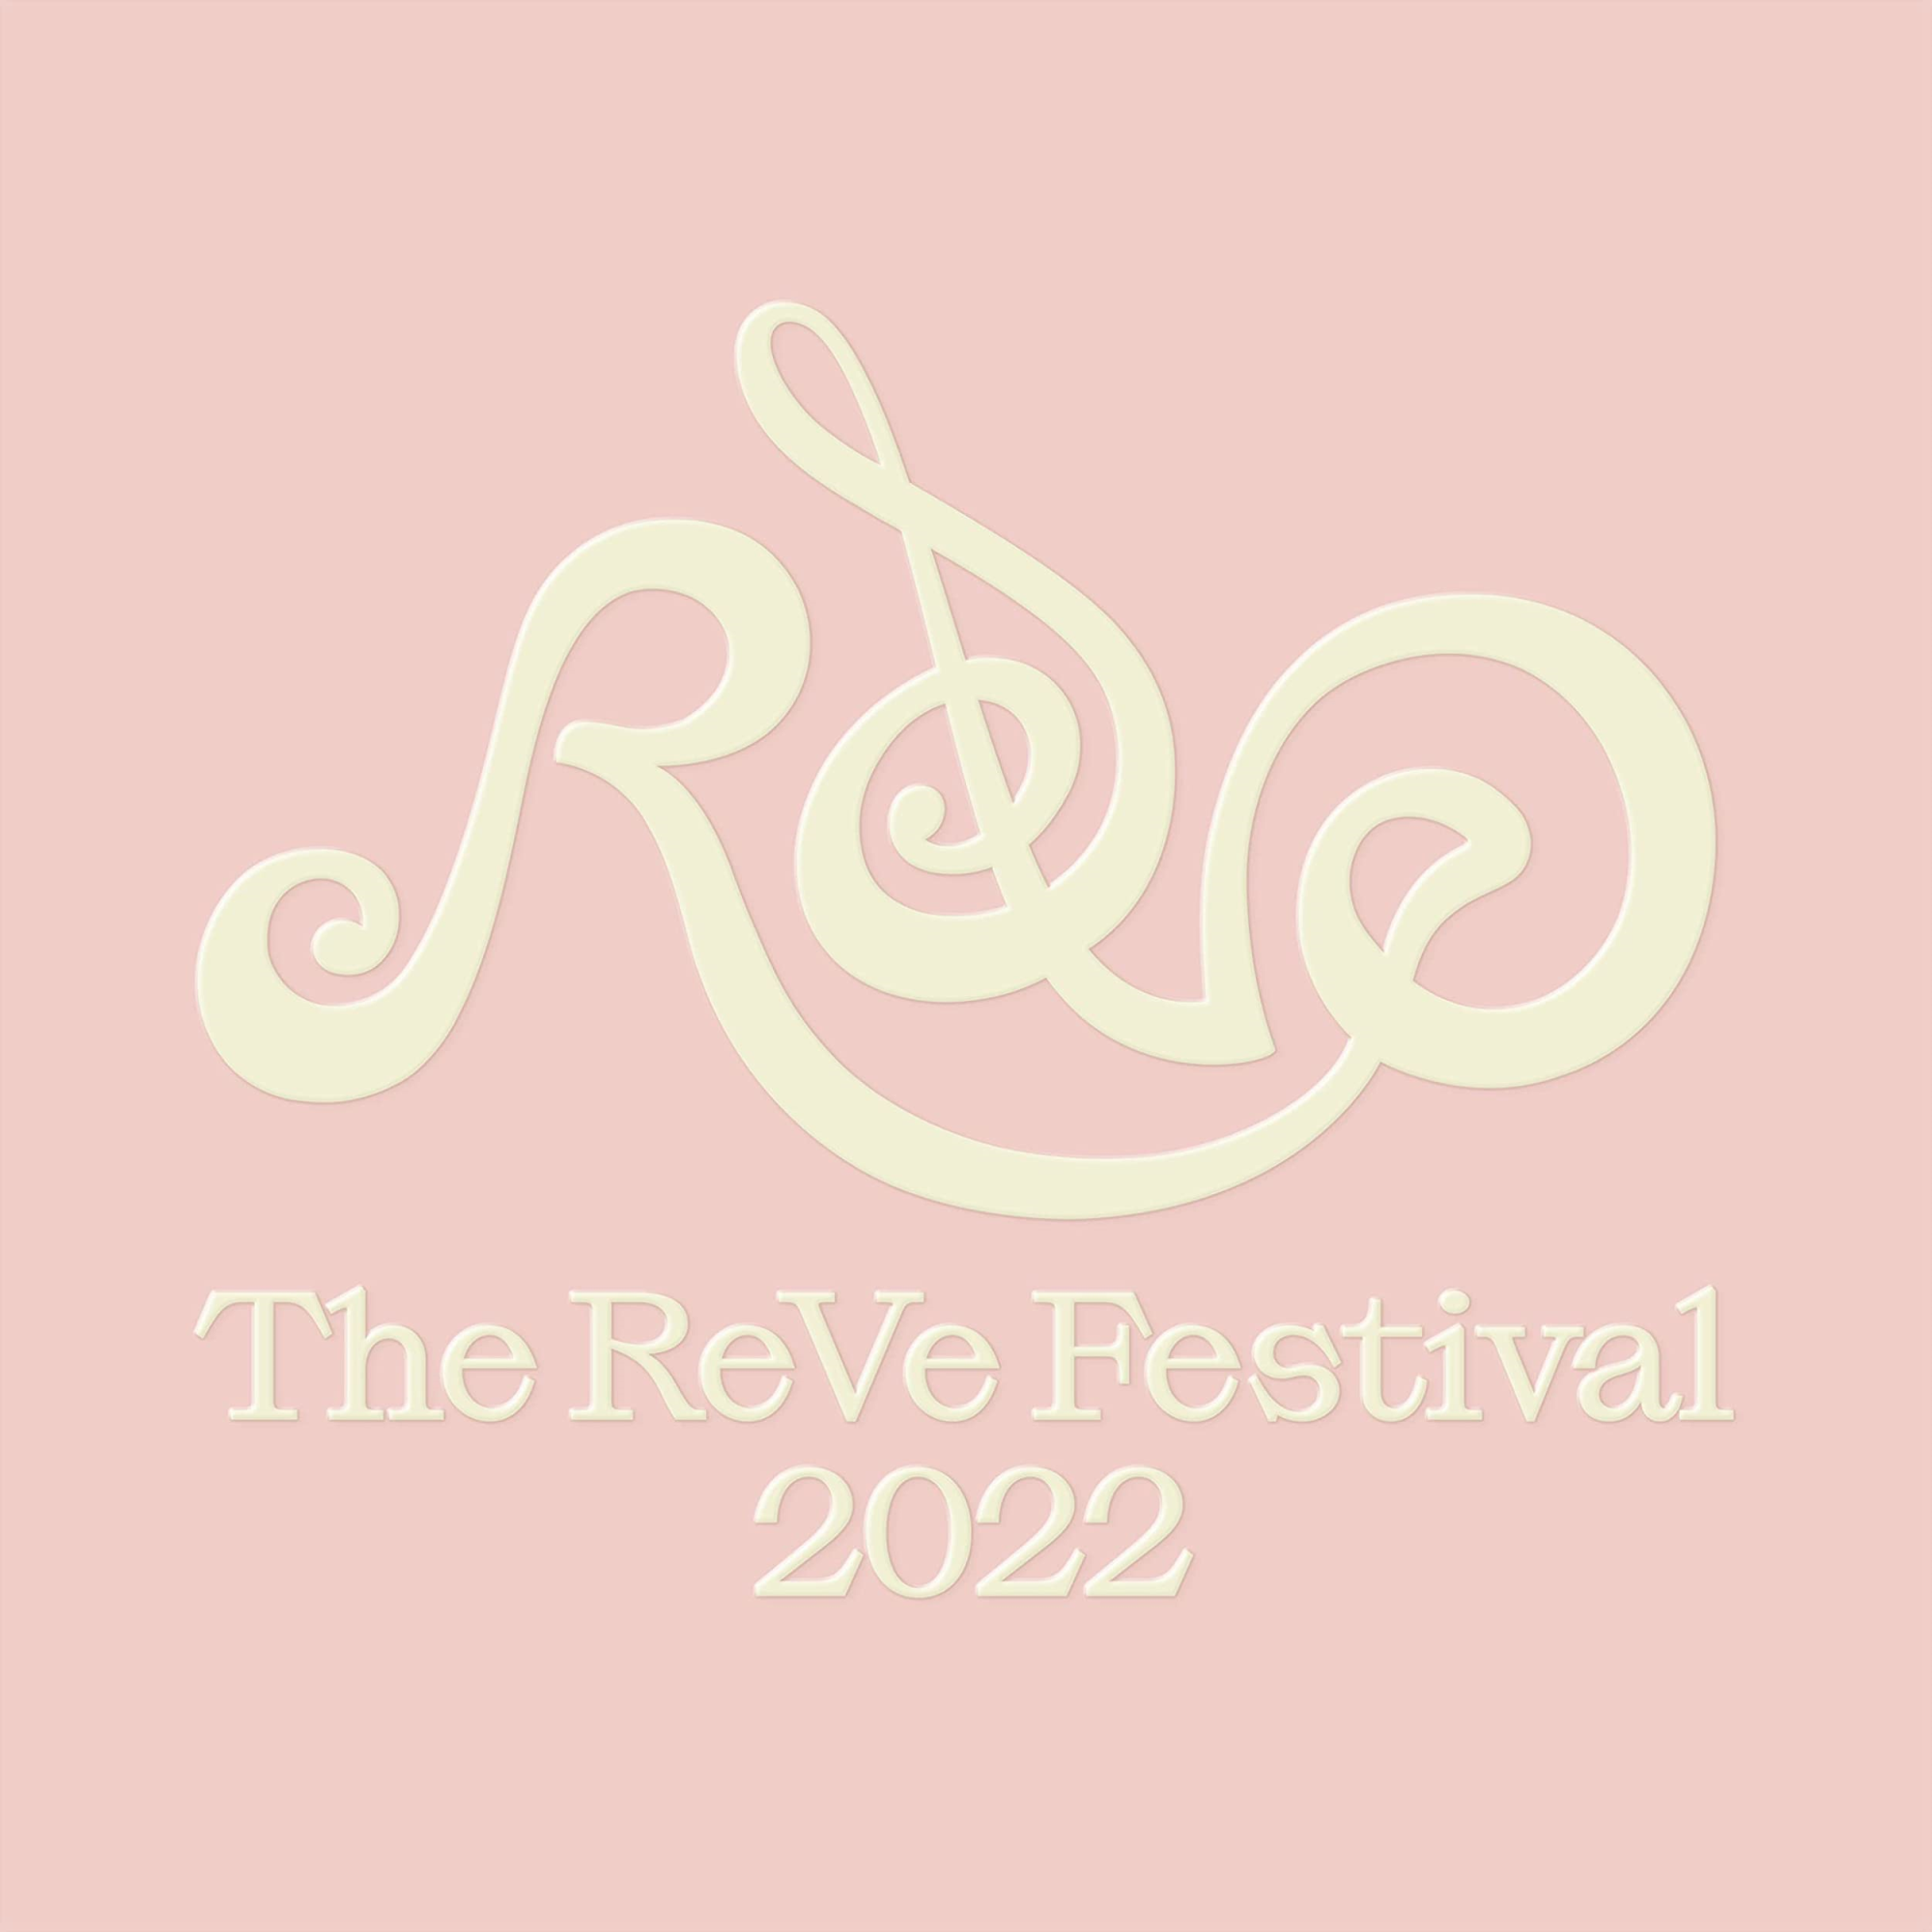 Audio Cd Red Velvet - The Reve Festival 2022 : Feel My Rhythm (Orgel Ver.) NUOVO SIGILLATO, EDIZIONE DEL 11/03/2022 SUBITO DISPONIBILE